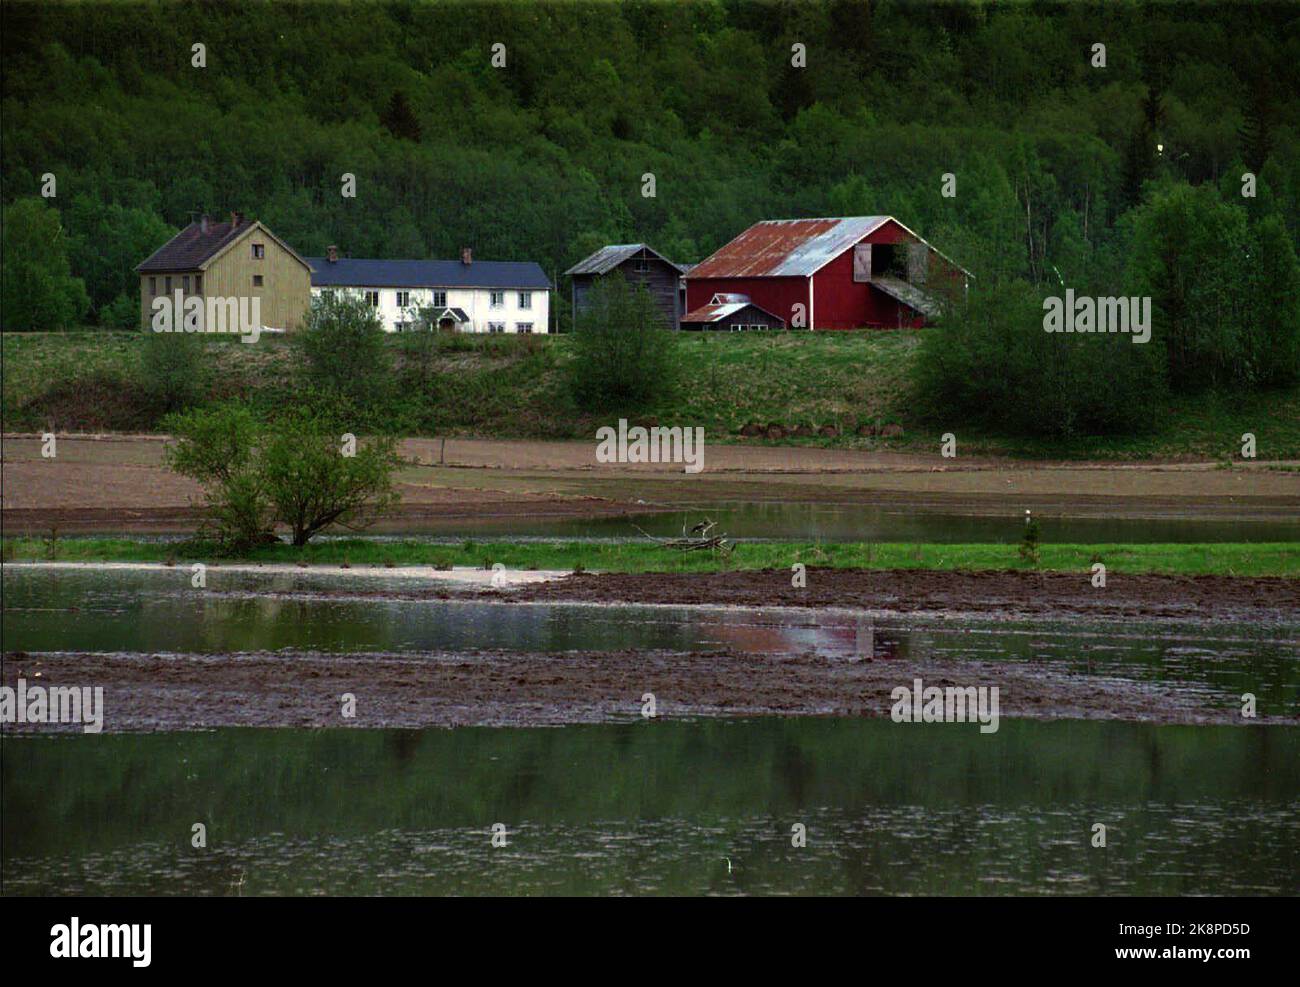 1995-05-30 catastrophe d'inondation dans l'est de la Norvège et de Trøndelag. En raison de la fonte des neiges et de la pluie, l'est de la Norvège est touché par les inondations et les inondations. Ici de Trøndelag: La rivière Gaula a traversé ses berges et a posé de grandes zones cultivées sous l'eau. Catastrophe des inondations 1995. Photo: Gorm Kallestad / NTB Banque D'Images